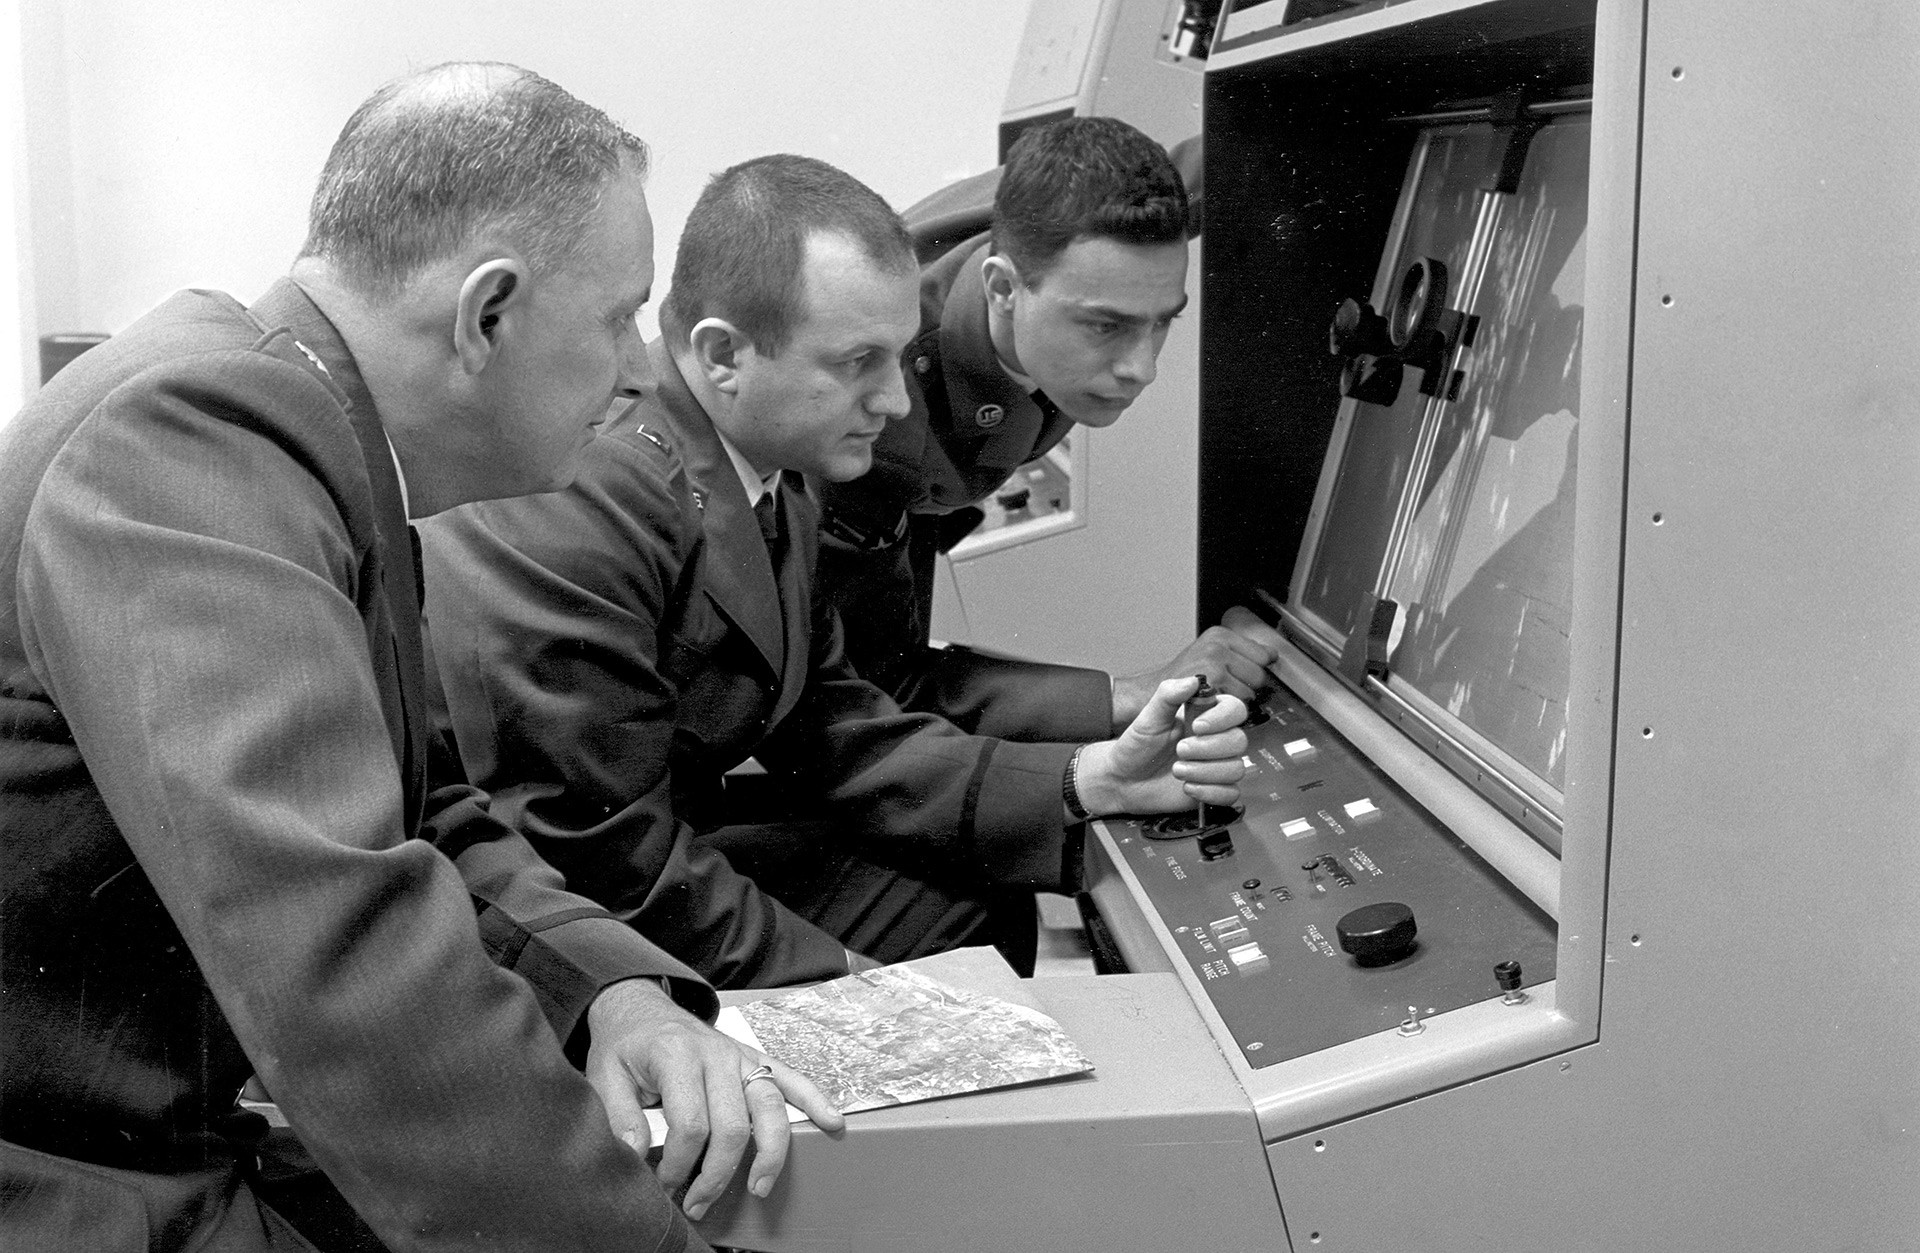 Osoblje Strateške zračne obrane tumači fotografiju zračnog izviđanja tijekom Kubanske krize, 1962.

